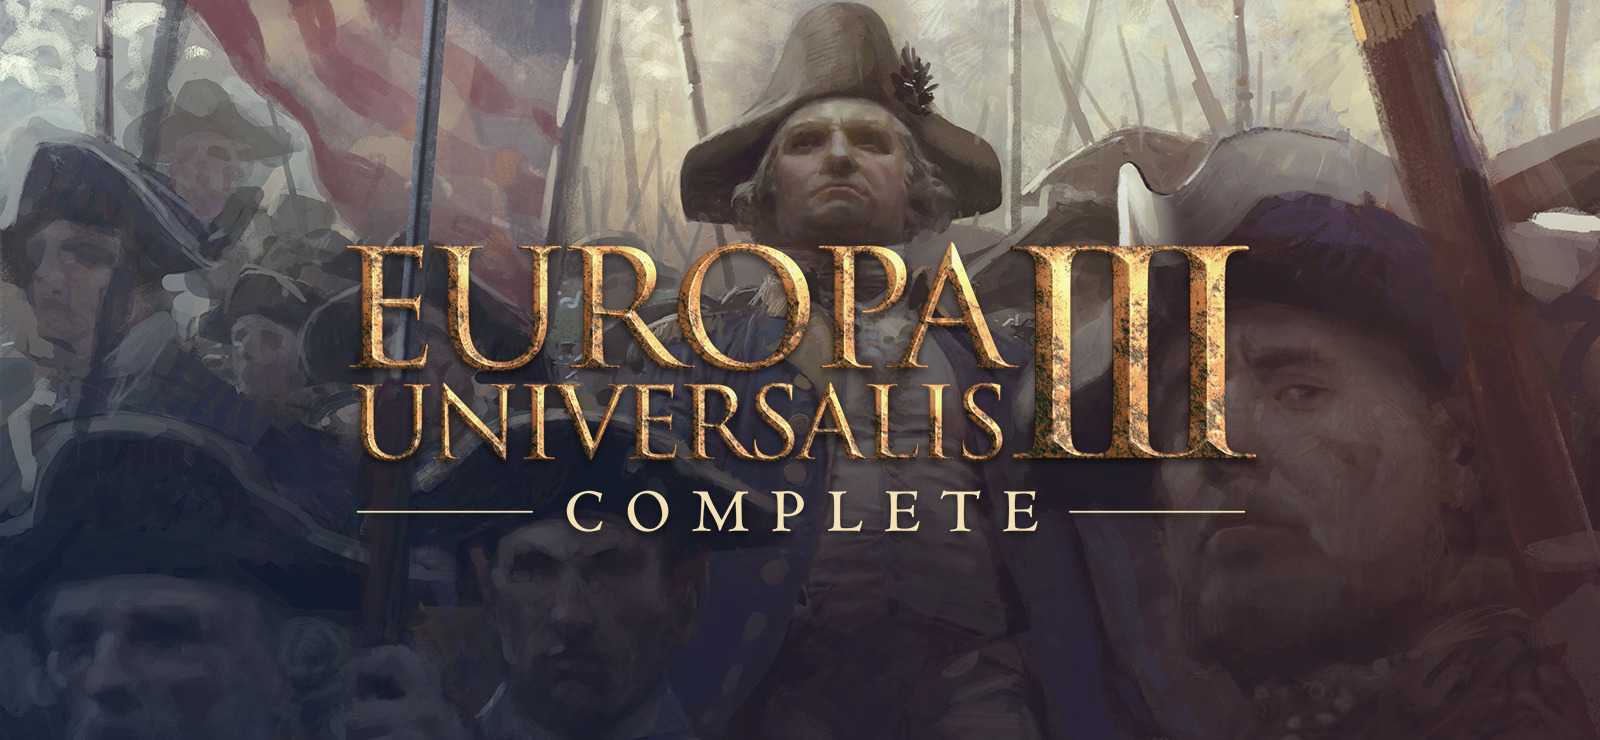 europa universalis 3 mac download free